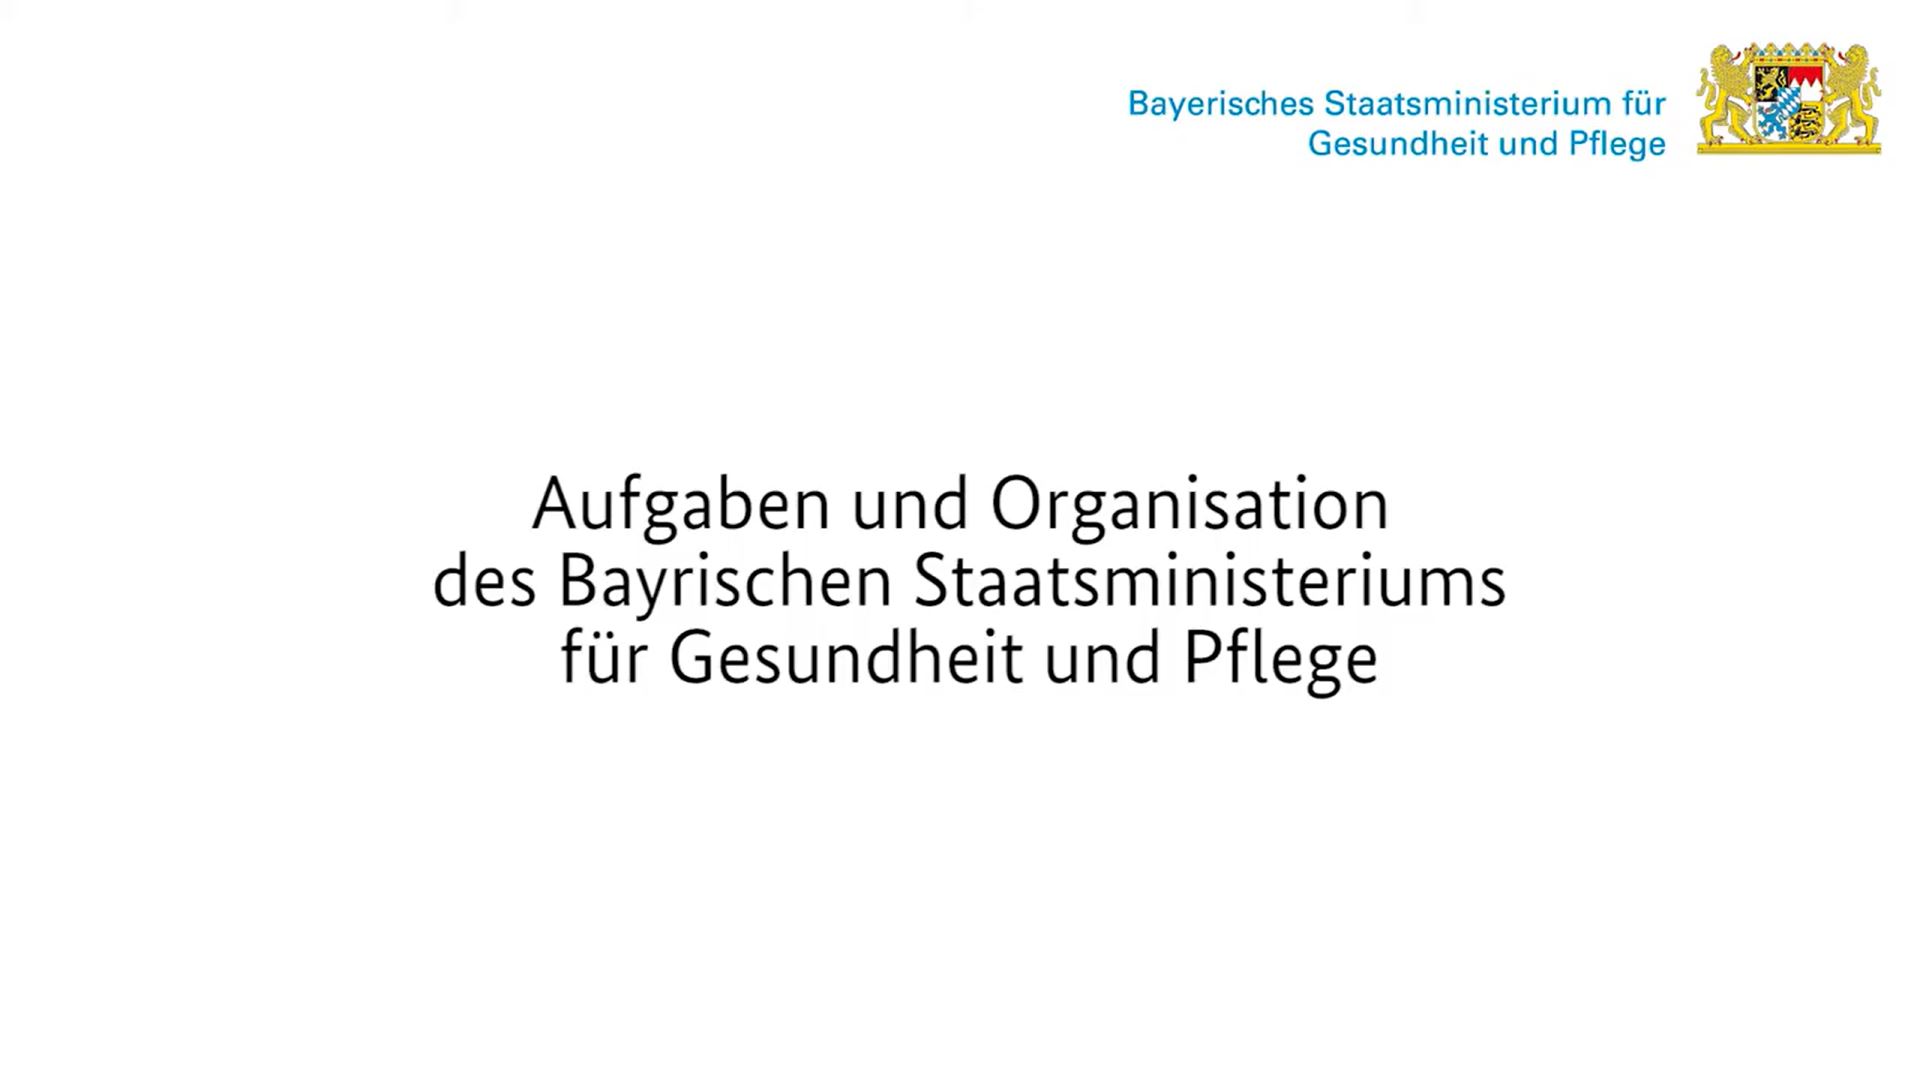 Das Video informiert über das Bayerische Staatsministerium für Gesundheit und Pflege.